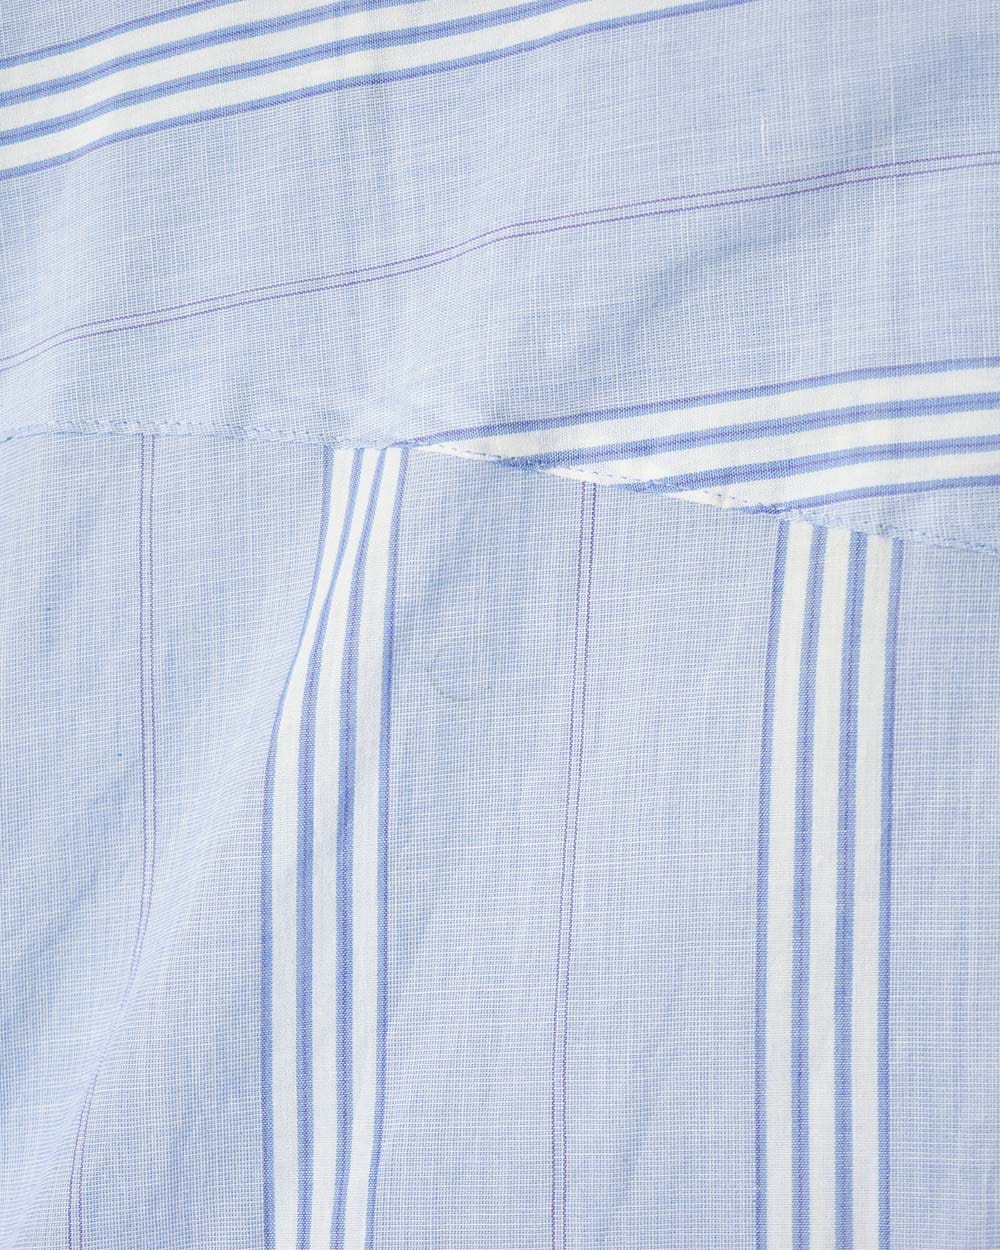 BabyBlue Wrangler Striped Shirt - Large